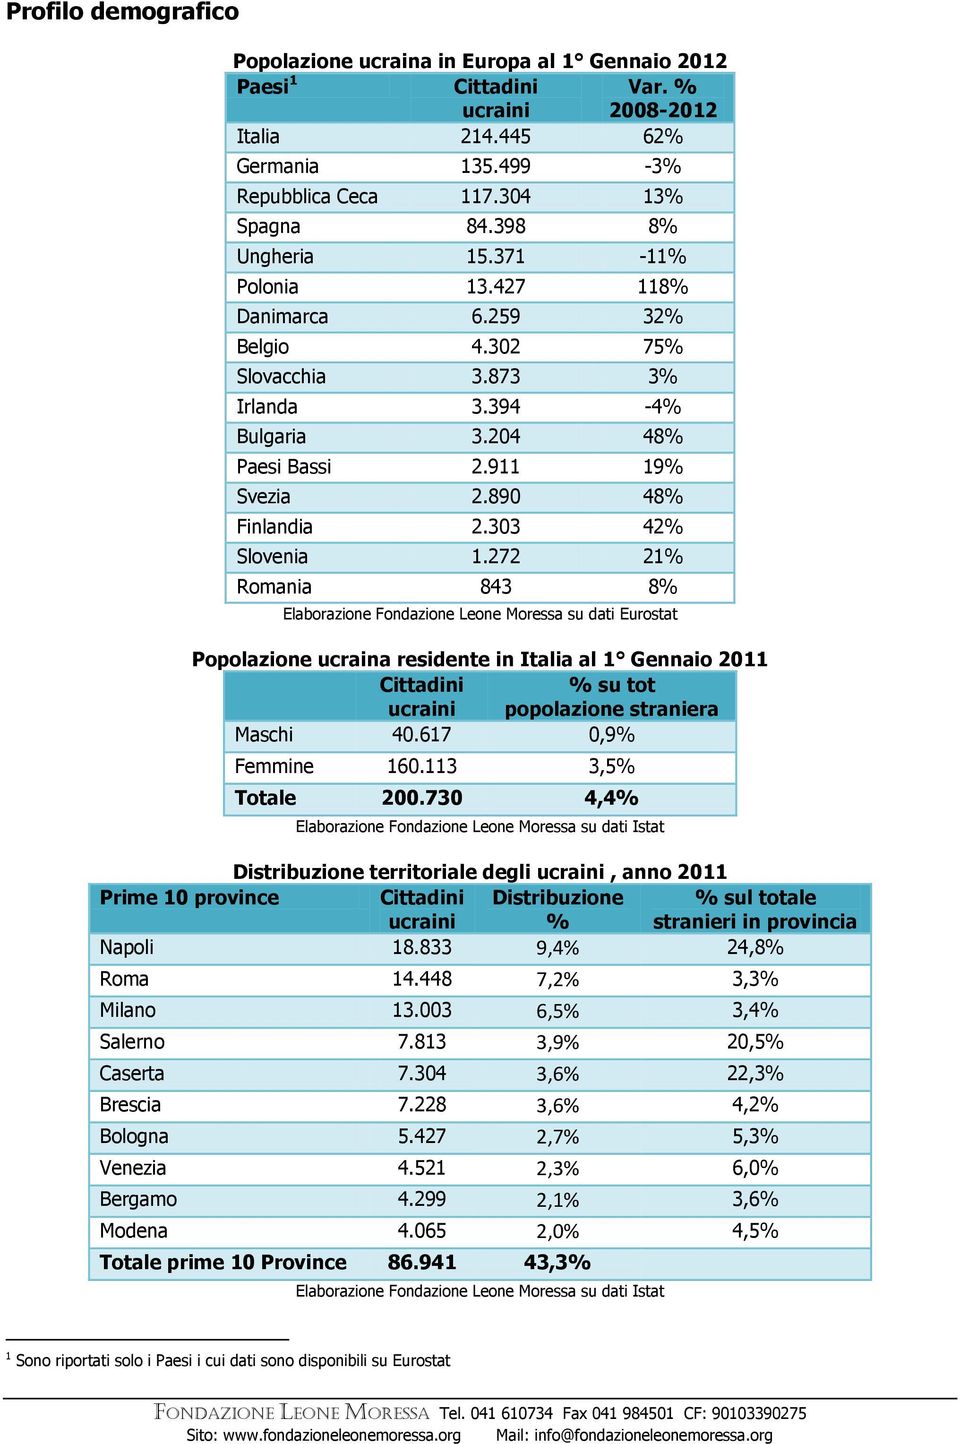 272 21% Romania 843 8% Elaborazione Fondazione Leone Moressa su dati Eurostat Popolazione ucraina residente in Italia al 1 Gennaio 2011 Cittadini % su tot popolazione straniera Maschi 40.